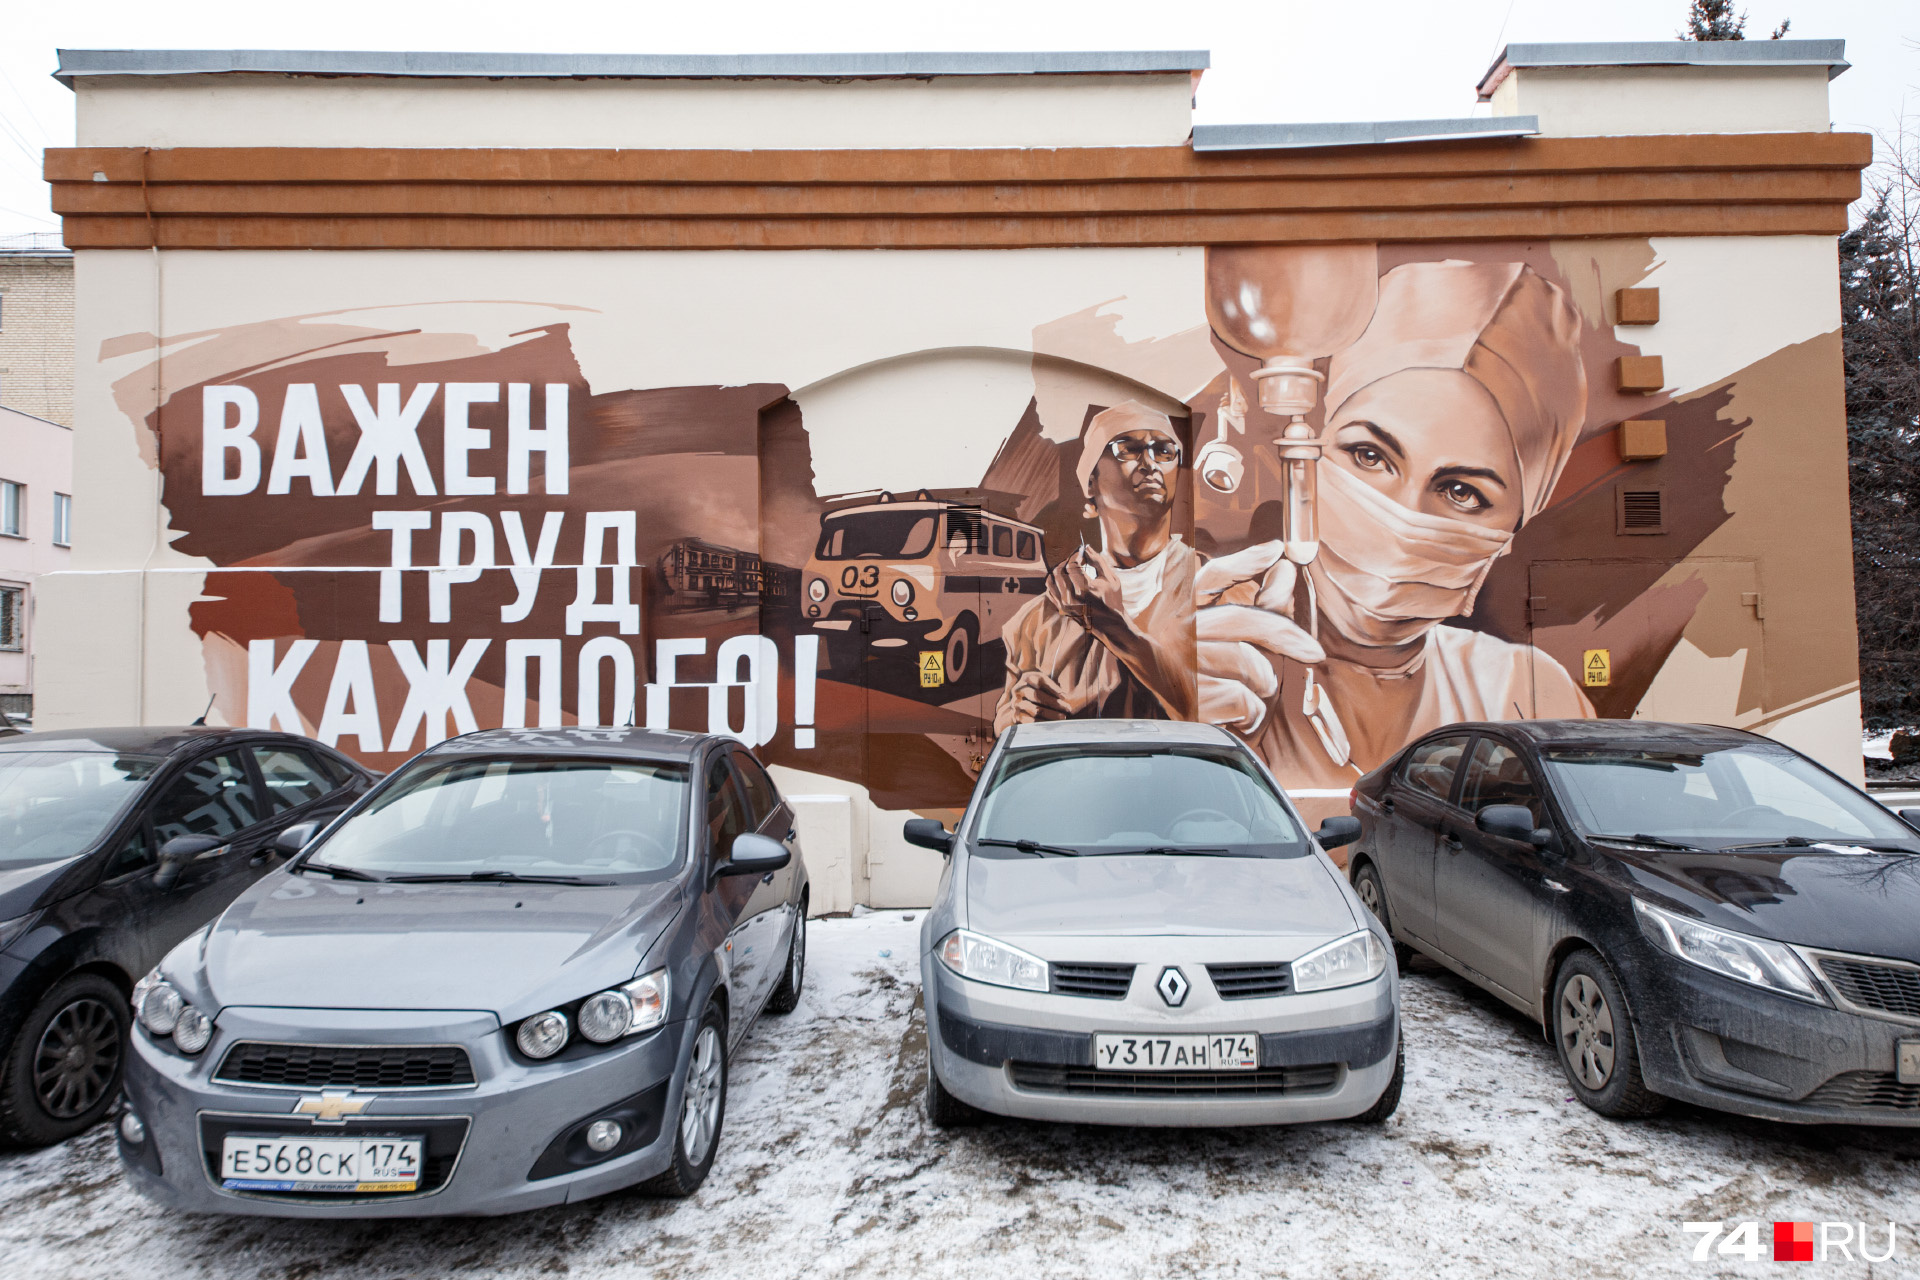 Рассмотреть граффити полностью мешают машины: трансформаторная будка, увы, стоит на парковке у сквера на Тимирязева